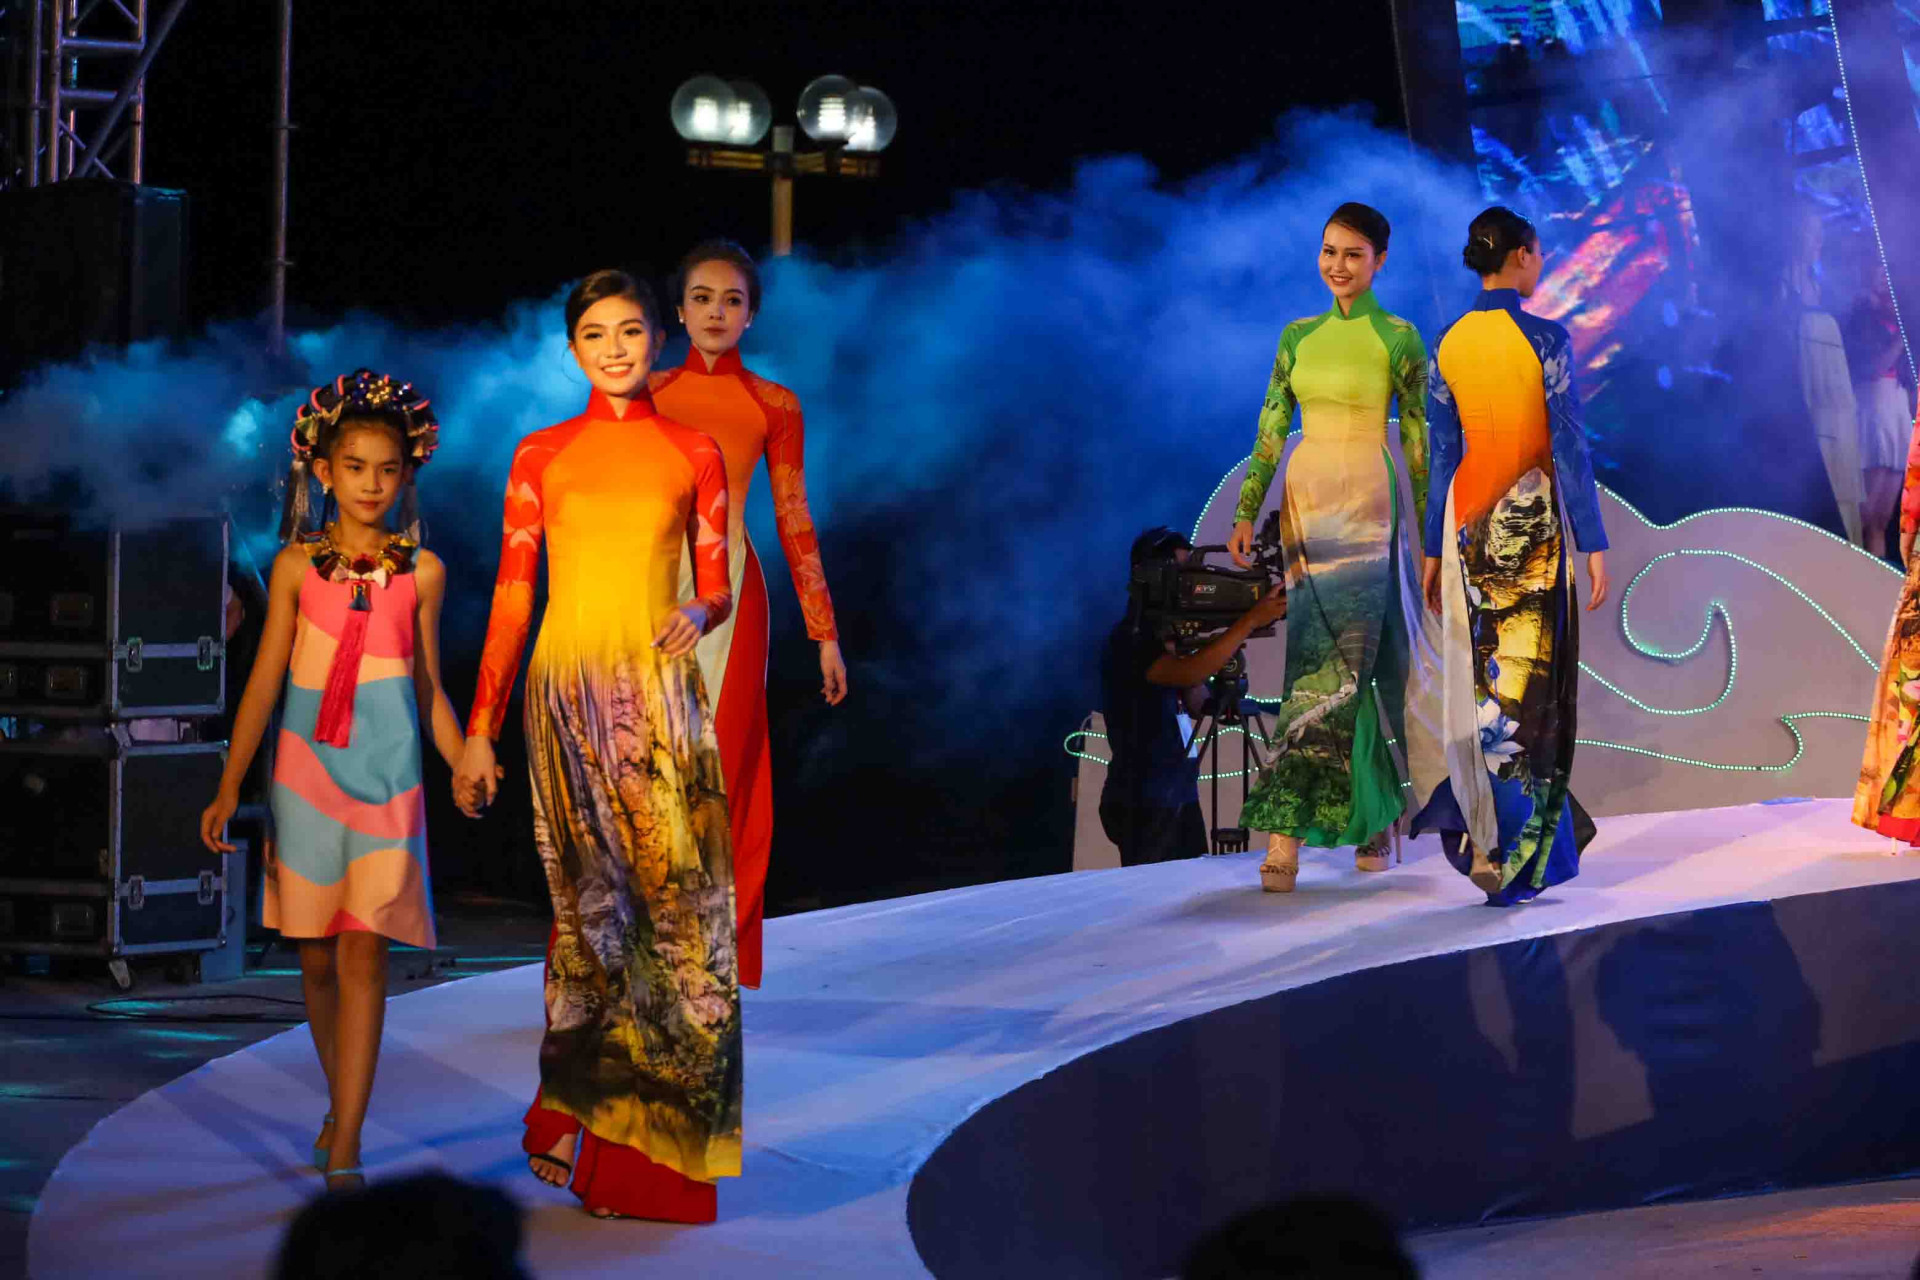 Màn trình diễn thời trang áo dài với những họa tiết in áo là các thắng cảnh của vùng đất Nha Trang - Khánh Hòa.